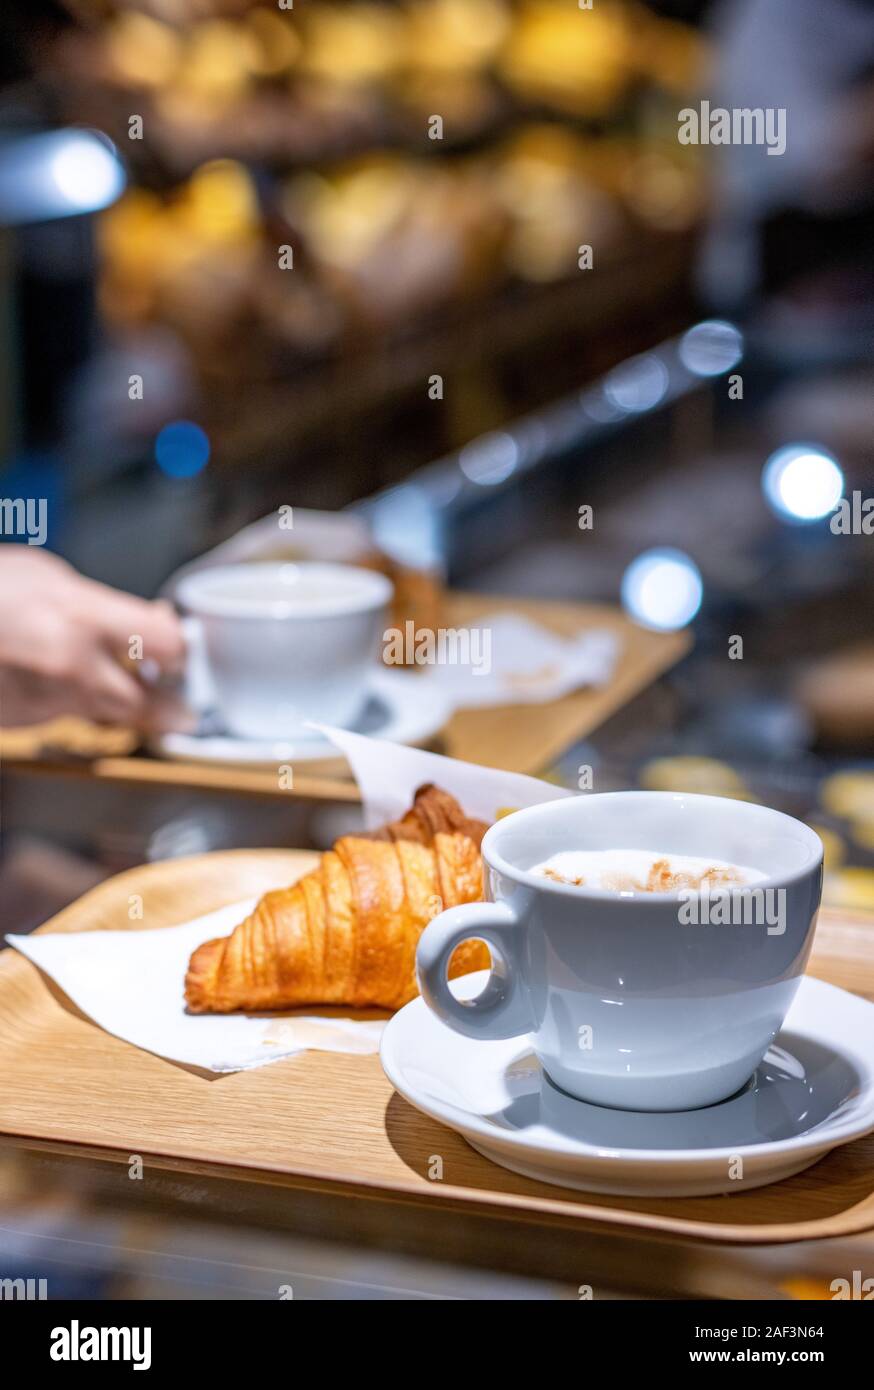 Café y croissant servido en una bandeja en el contador en un borroso fondo de pastelería Foto de stock